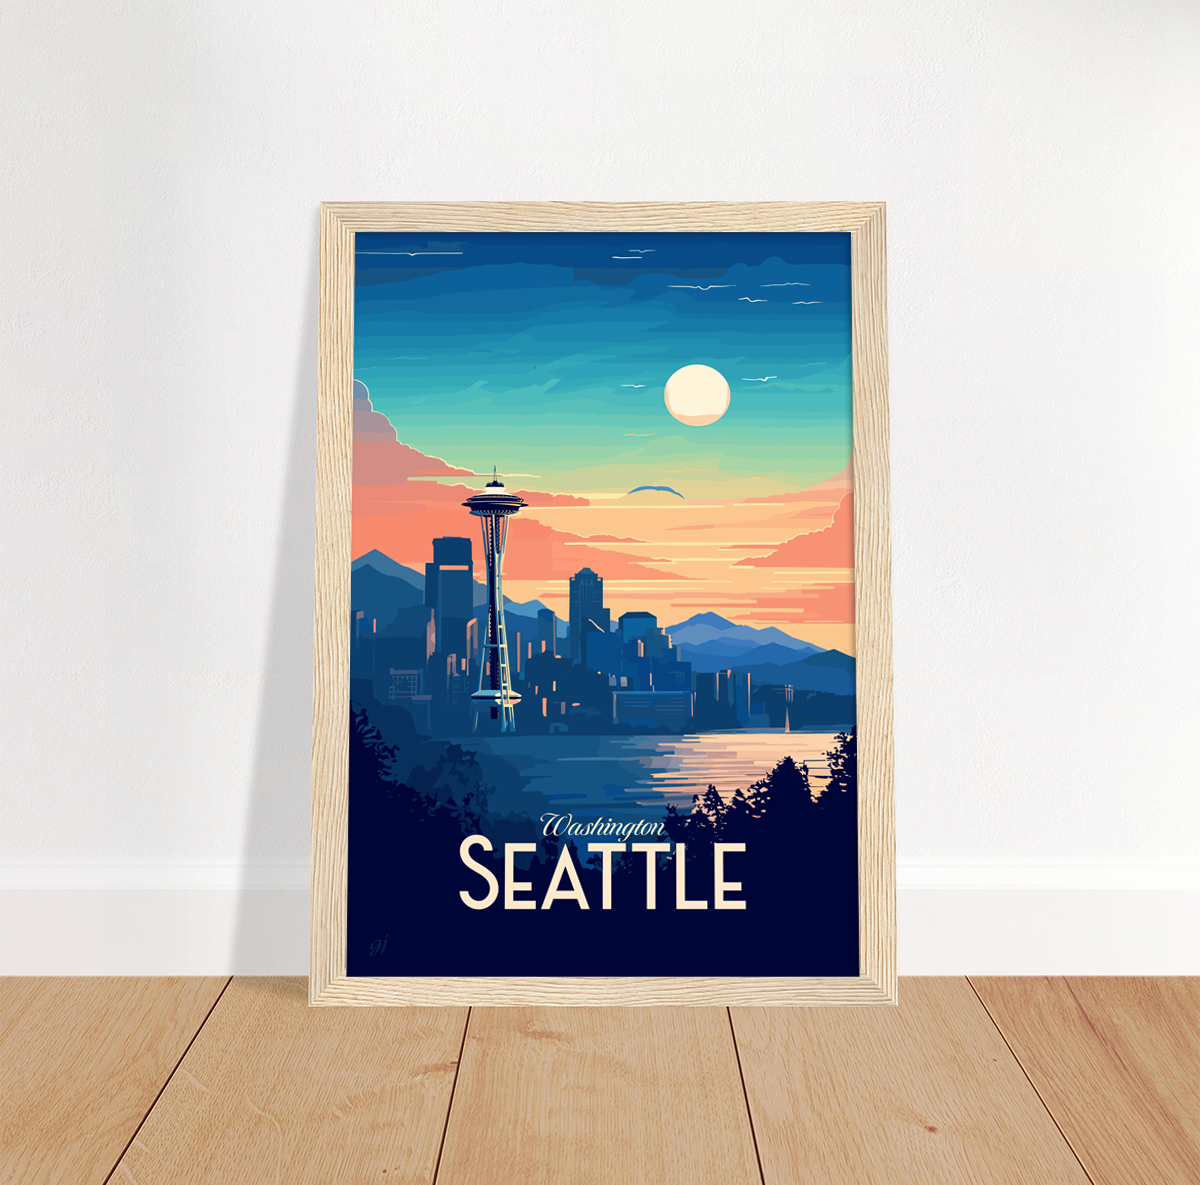 Seattle poster by bon voyage design